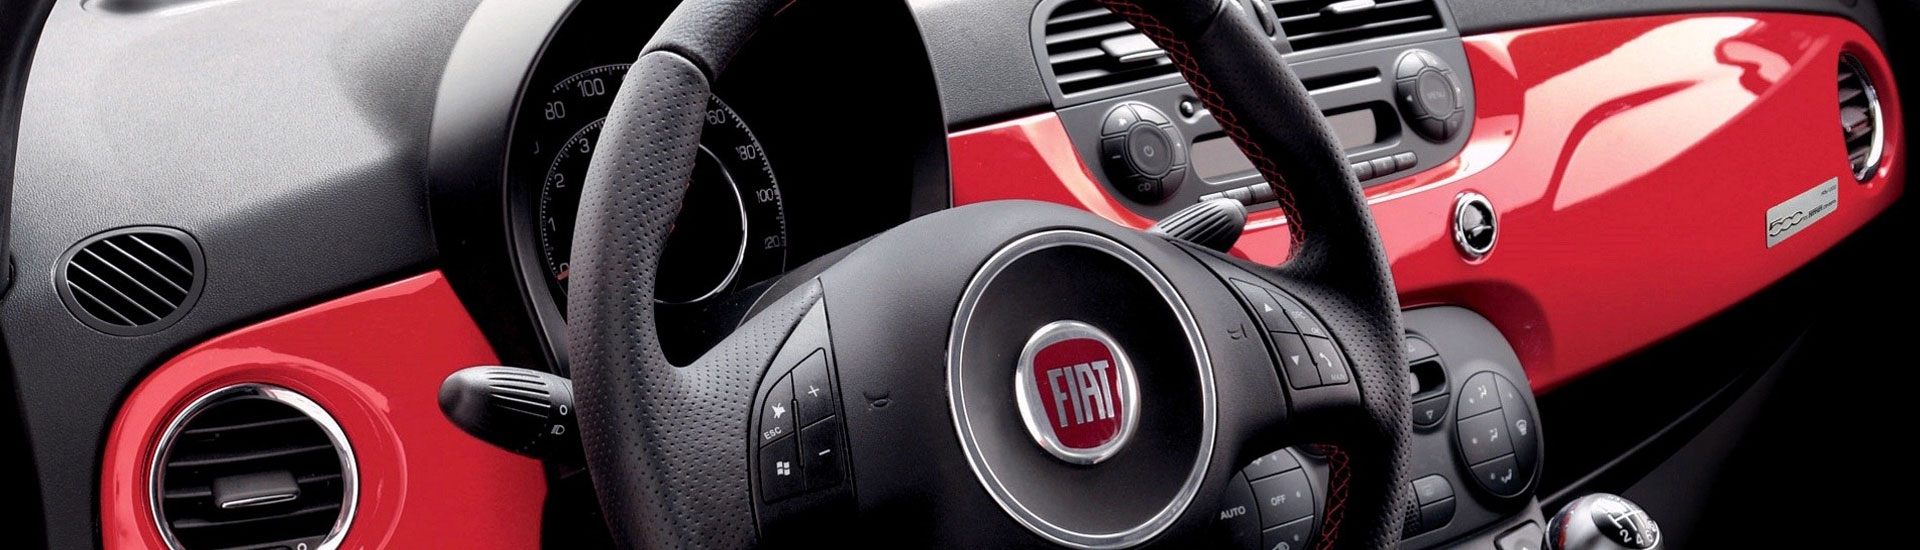 2015 Fiat 500L Custom Dash Kits